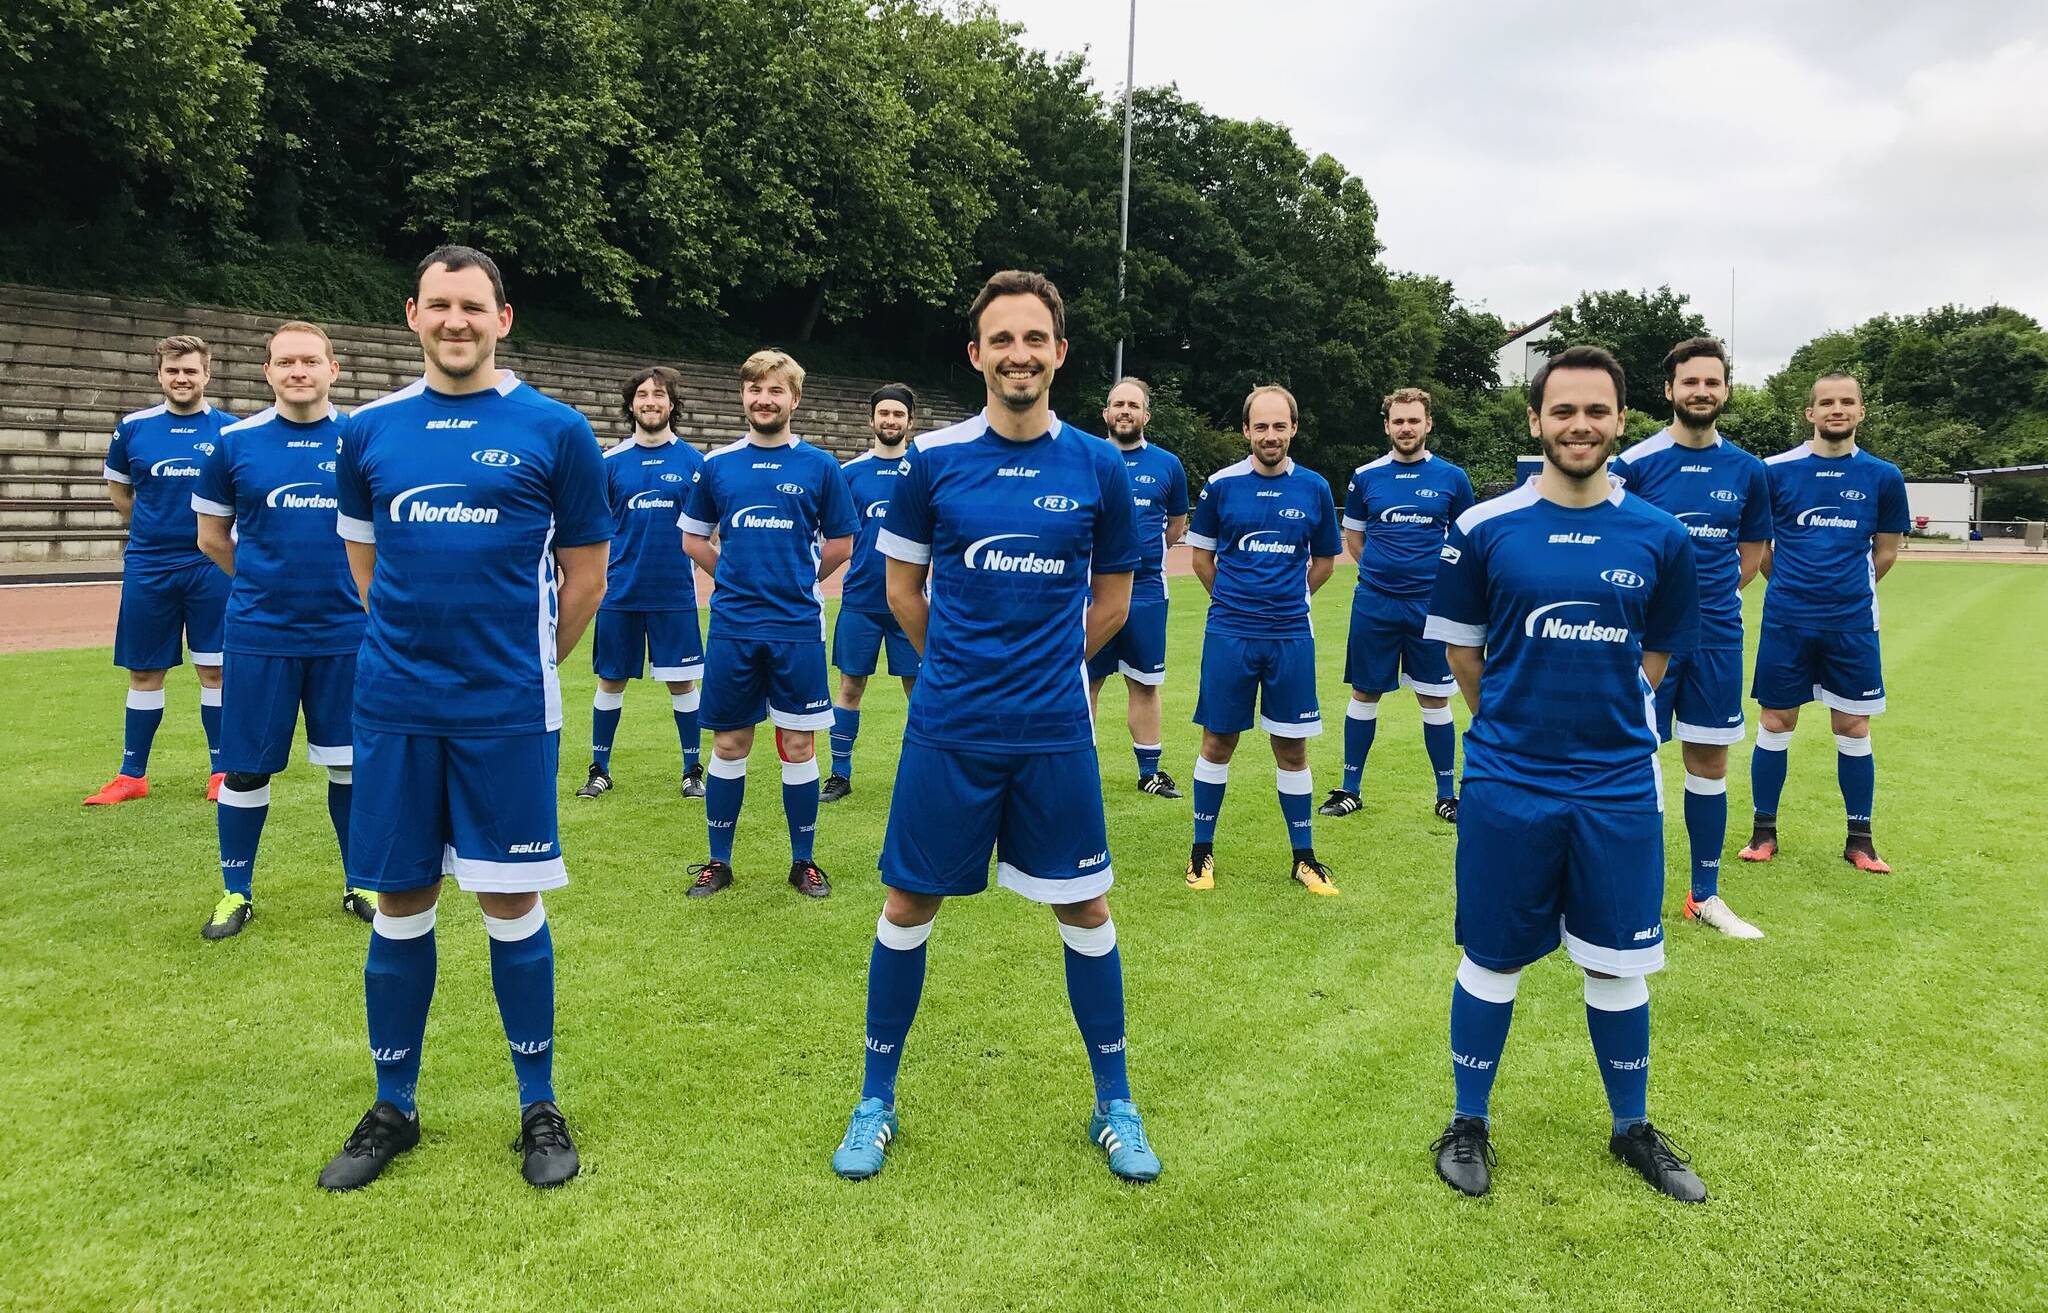  Das Team des FC Parea Schimmelbusch freut sich über ein neues Trainingsdress, gesponsert vom Erkrather Unternehmen Nordson. 